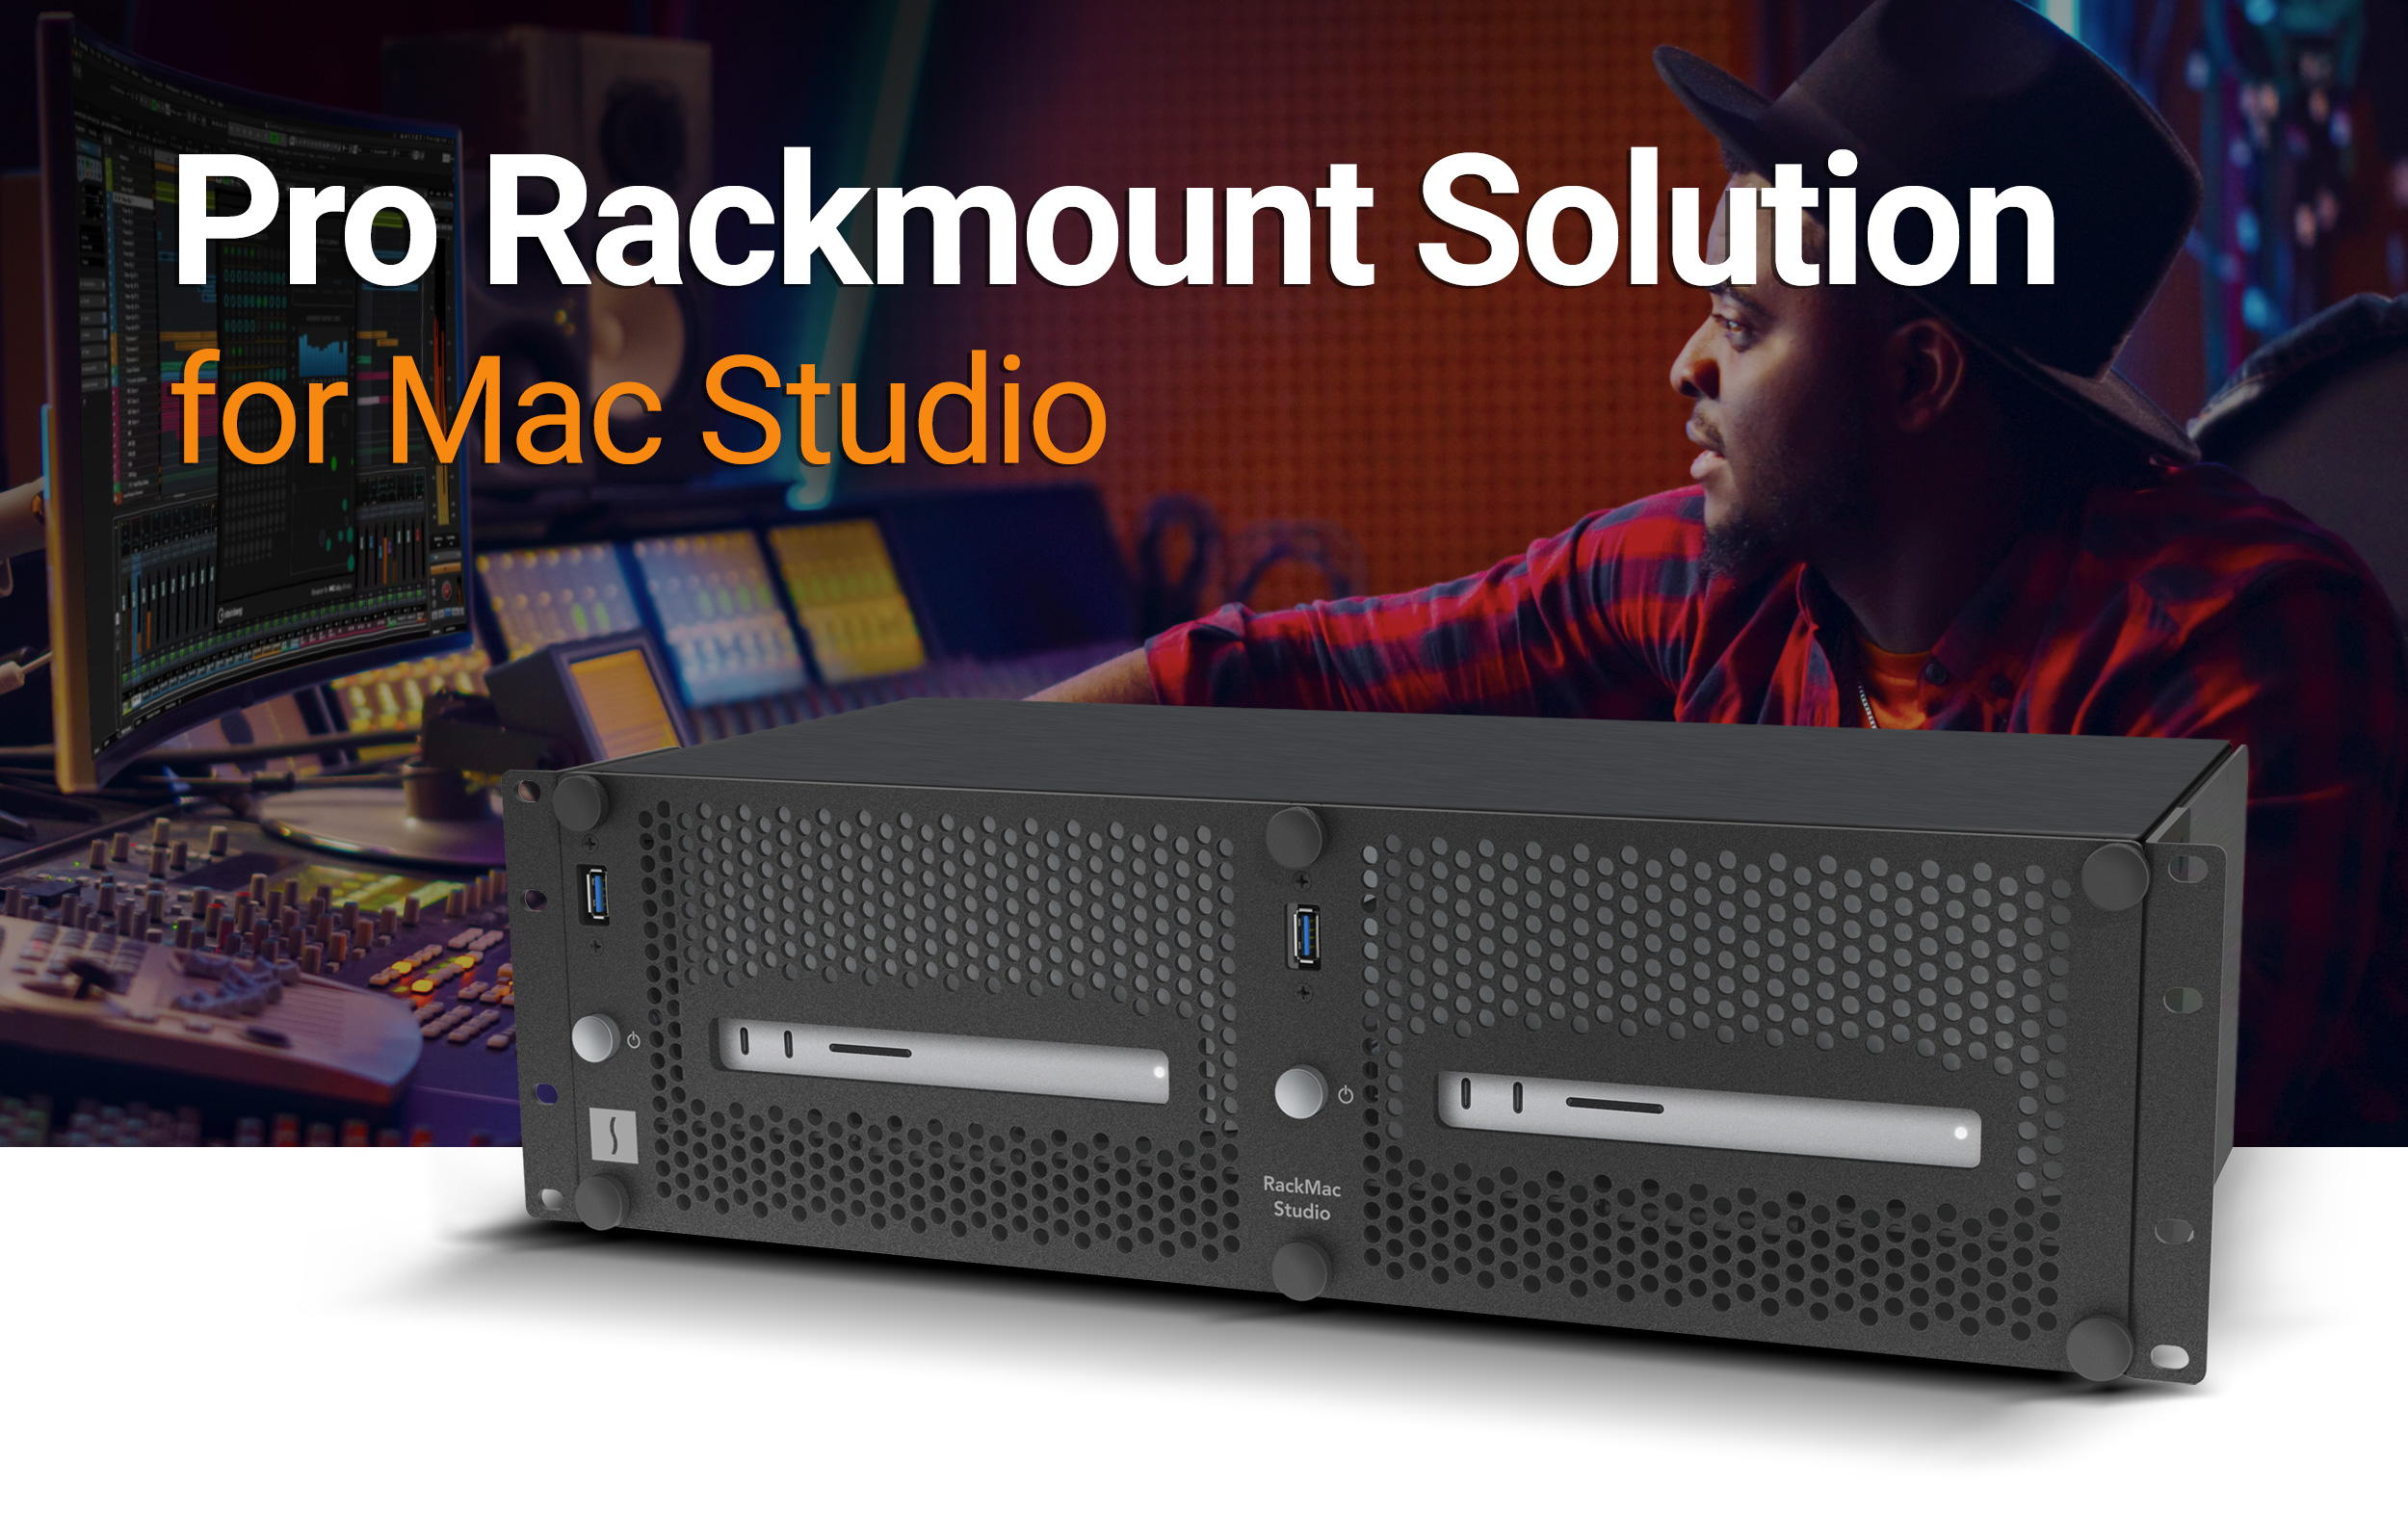 RackMac Studio - Pro Rackmount Solution for Mac Studio